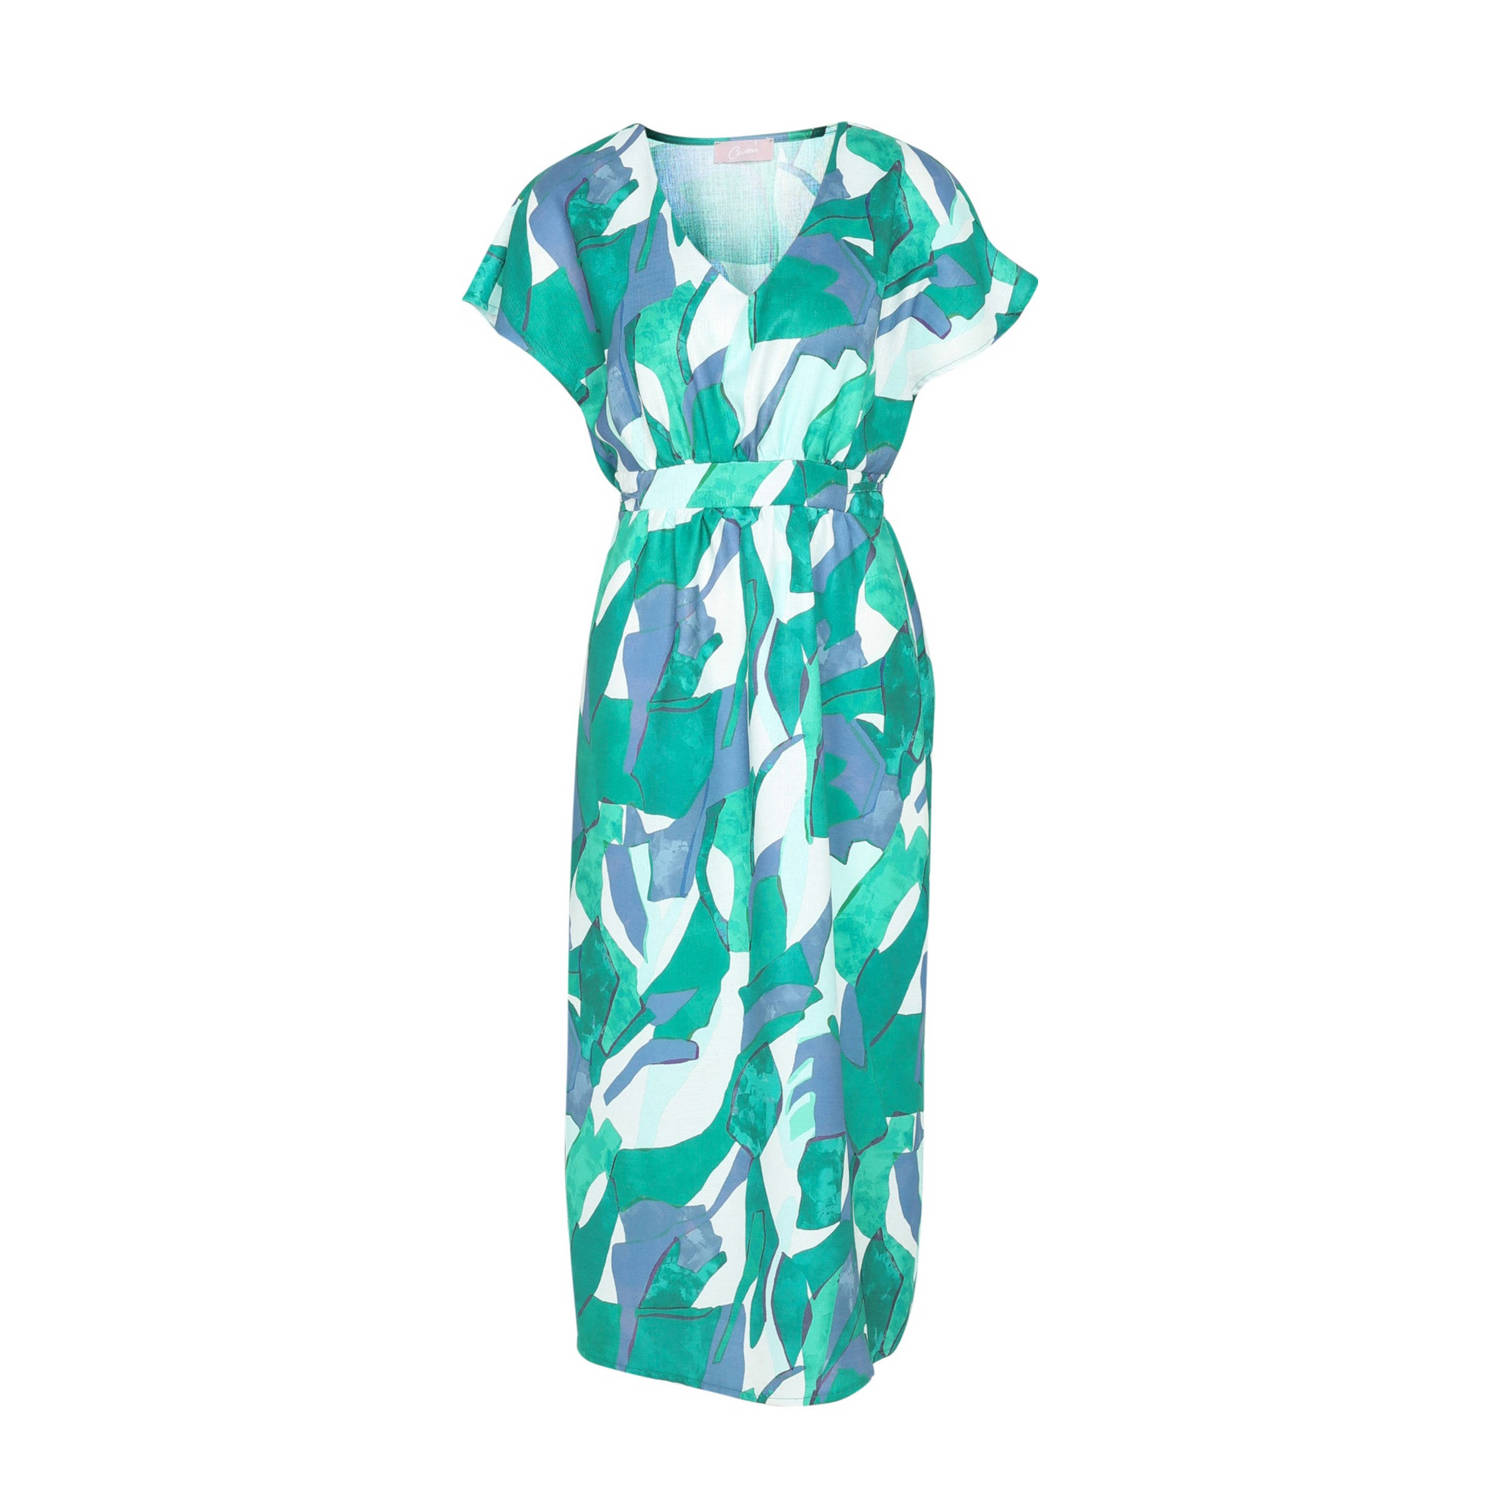 Cassis jurk met grafische print groen wit blauw